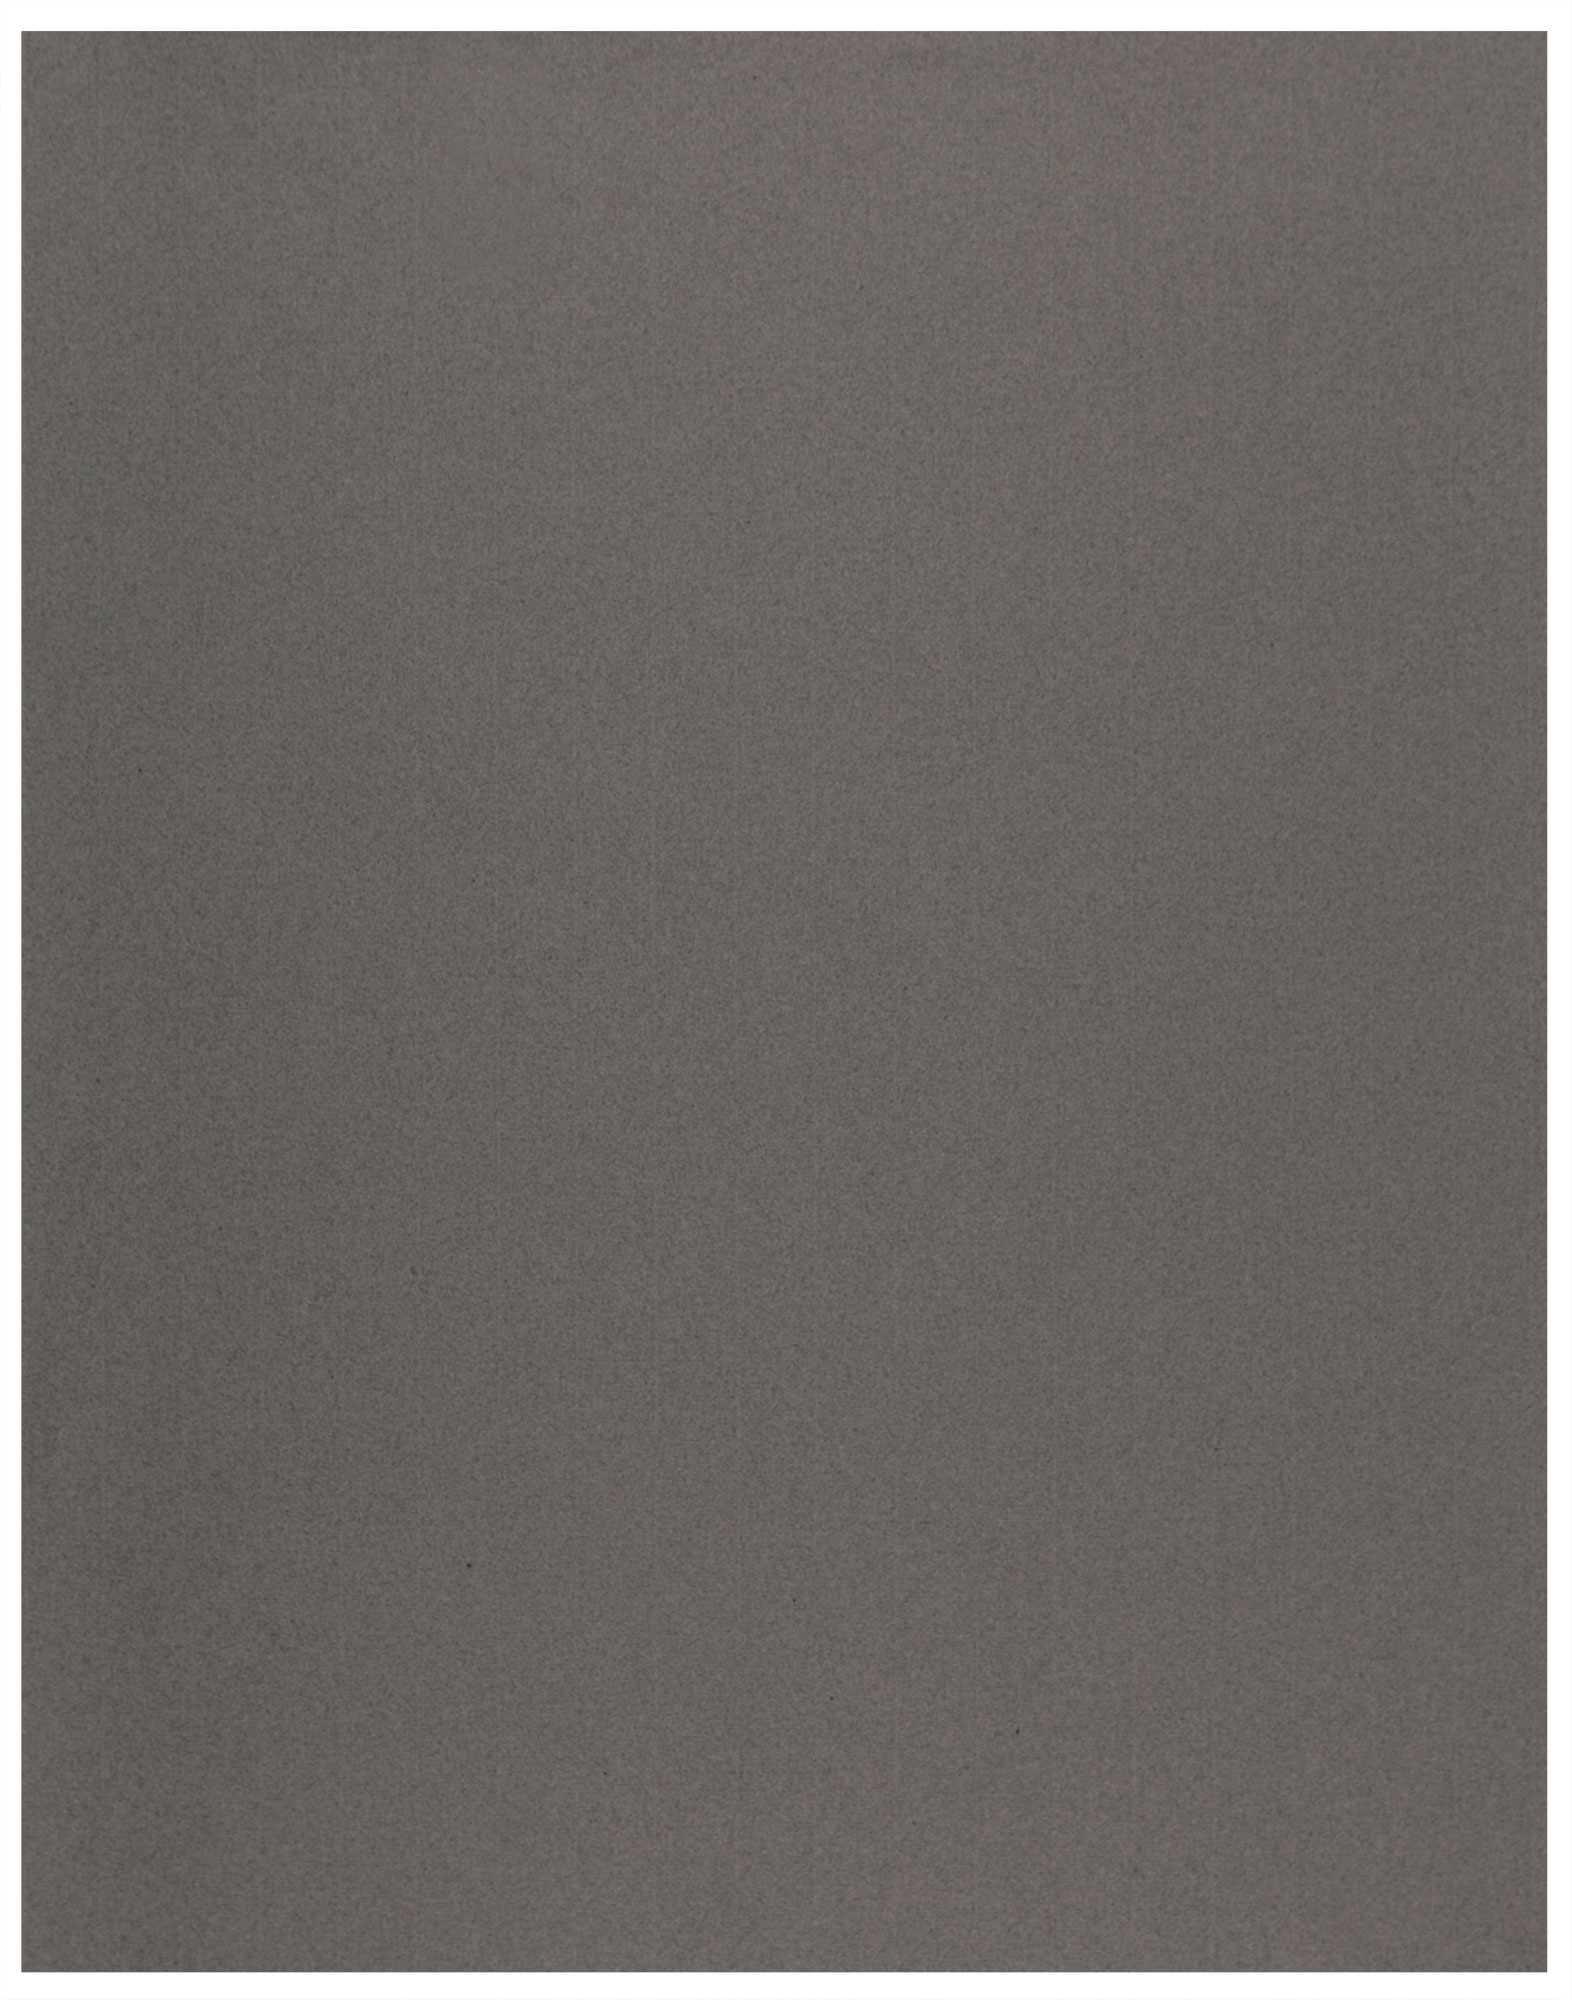 Black Ingres Drawing Paper - 19 1/2 x 25 1/2